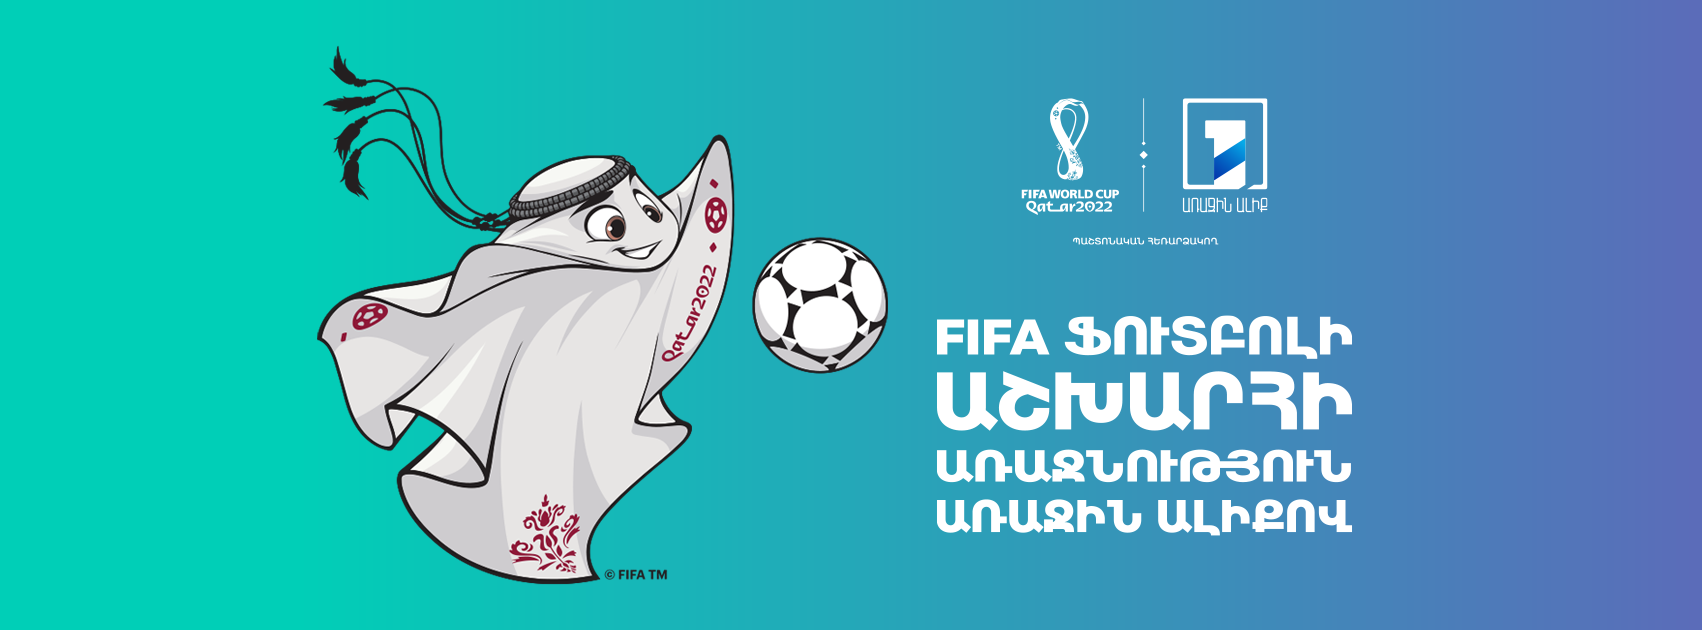 آغاز موردانتظارترین رویداد دنیای فوتبال توسط شبکه یک – نیوز ارمنستان اعلام می شود